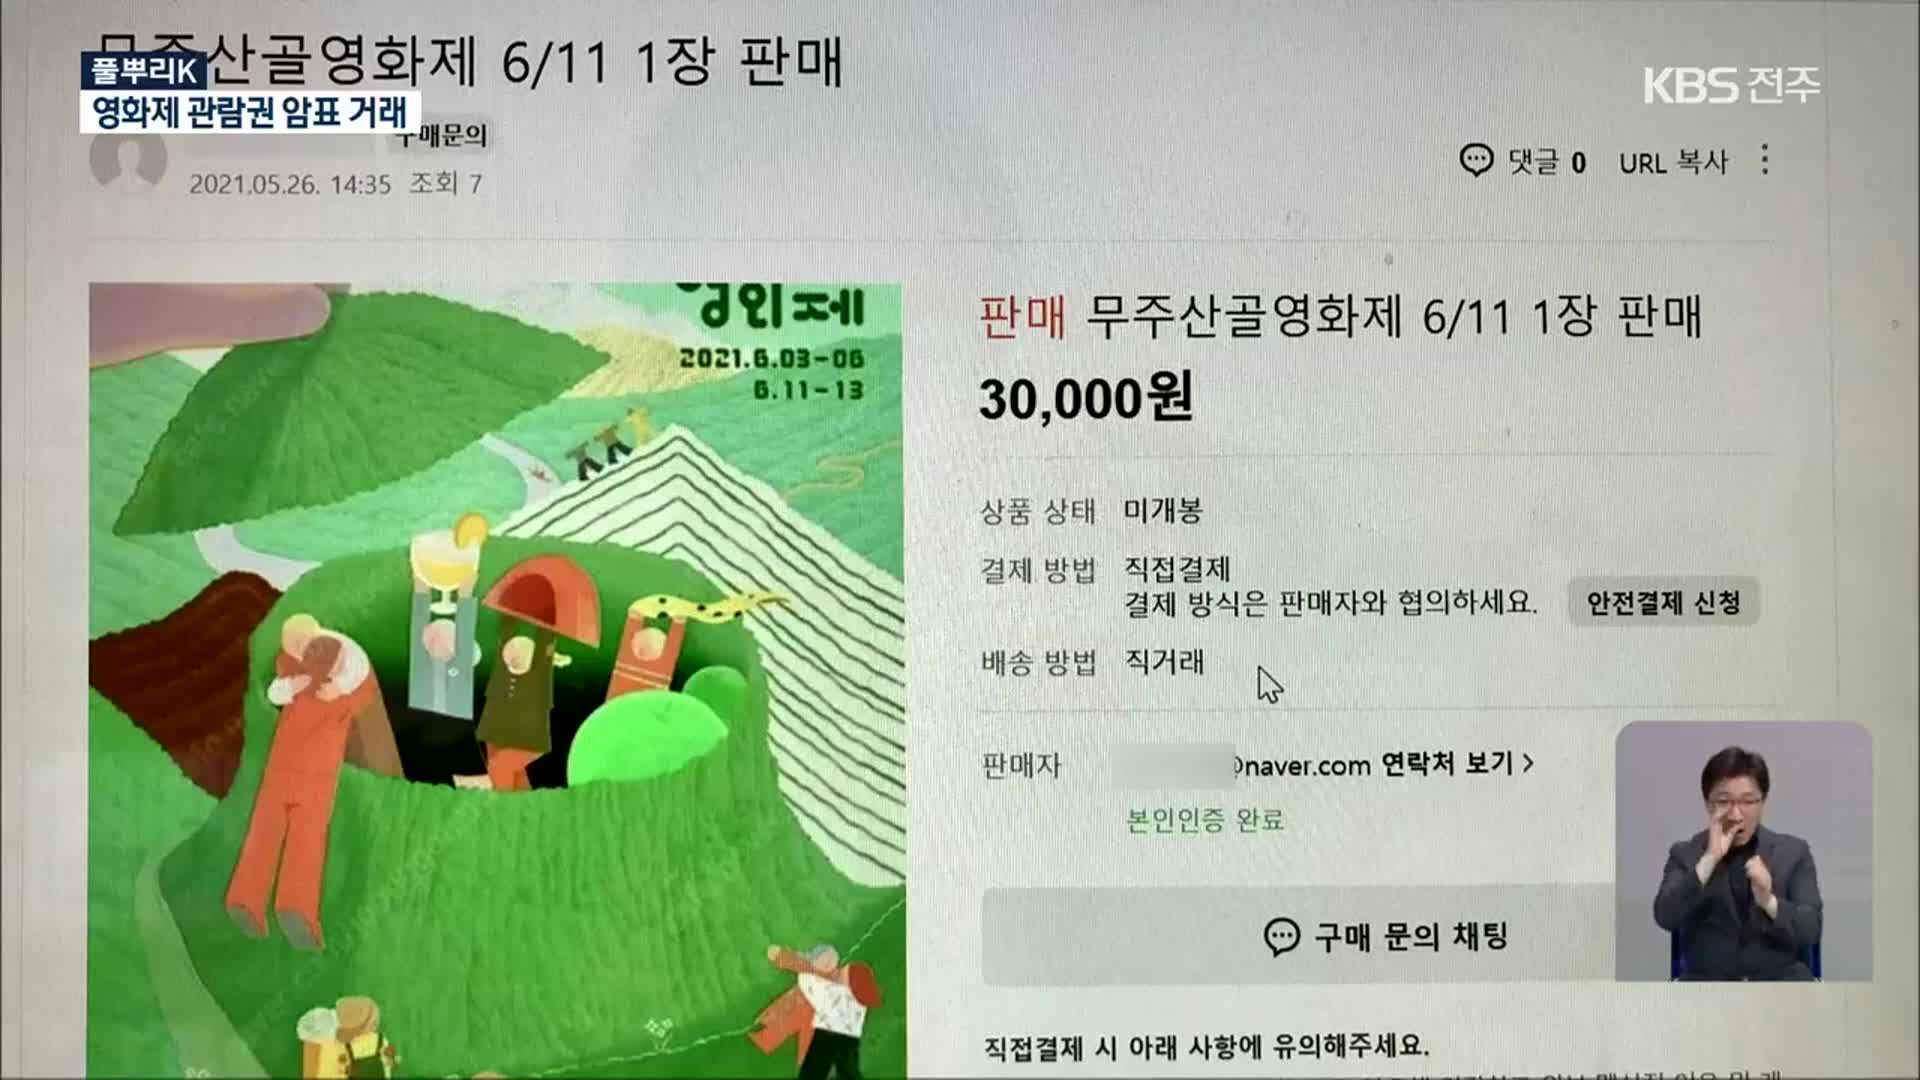 [풀뿌리K] 무주산골영화제 관람권…중고 사이트서 ‘웃돈 거래’ 논란